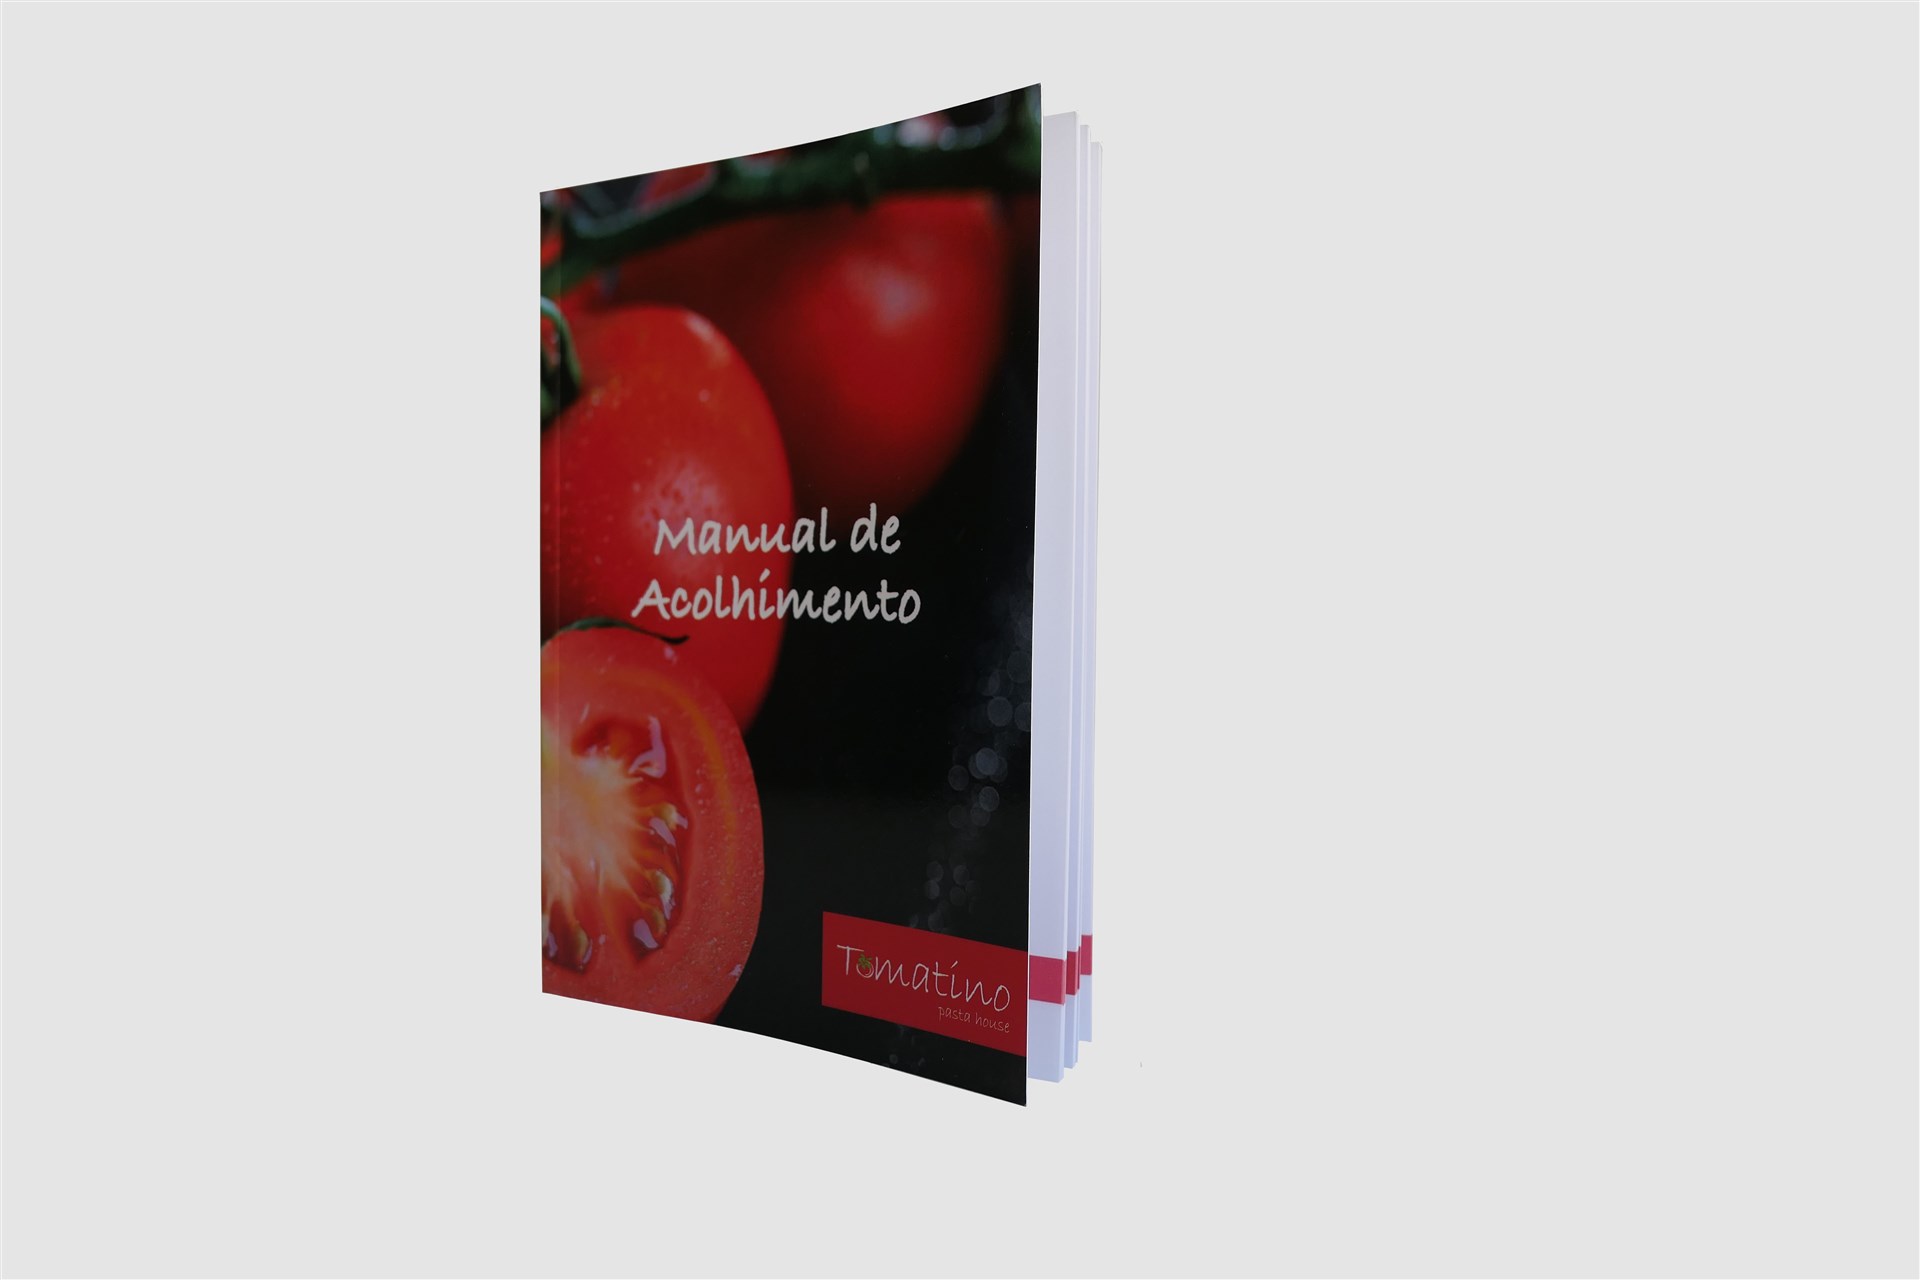  Manual  “Tomatino” com 90 páginas cozido e brochado a capa